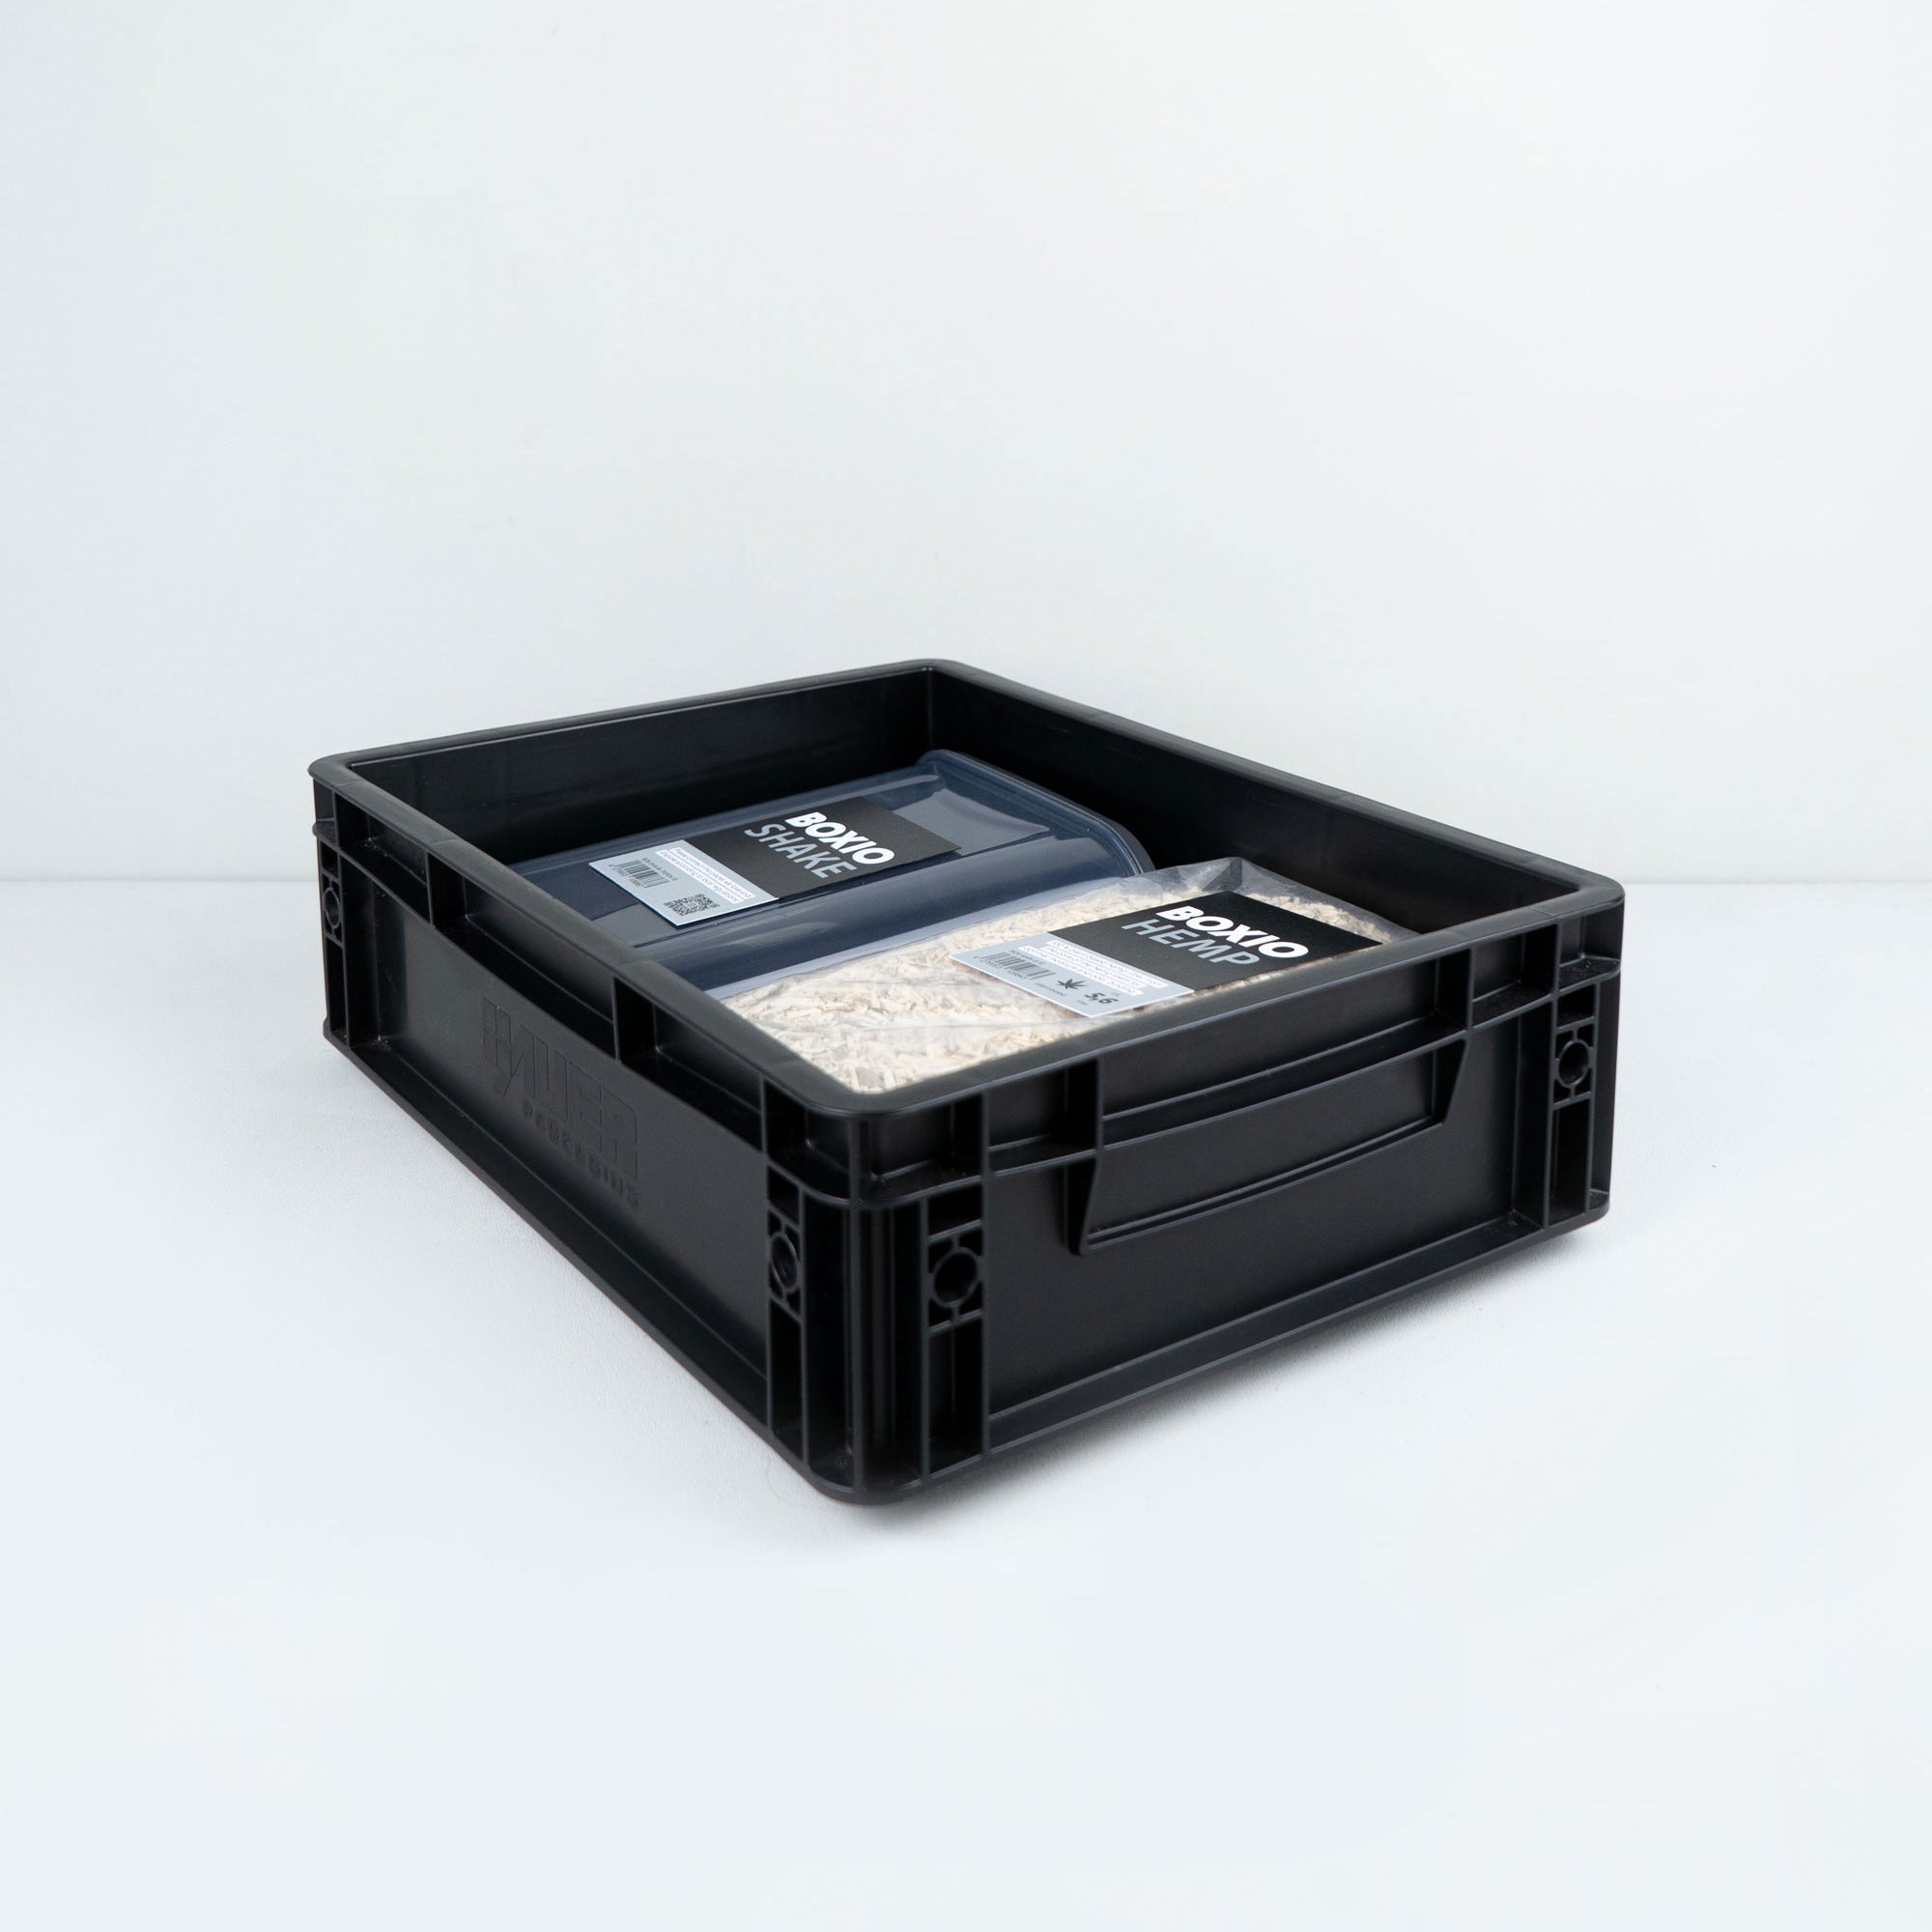 BOXIO - SOLO: Caja de almacenamiento con tapa - Eurobox 40x30 x 28 cm -  caja de transporte de plástico perfecta para camping, barco o jardín -  apilable con otras cajas apilables